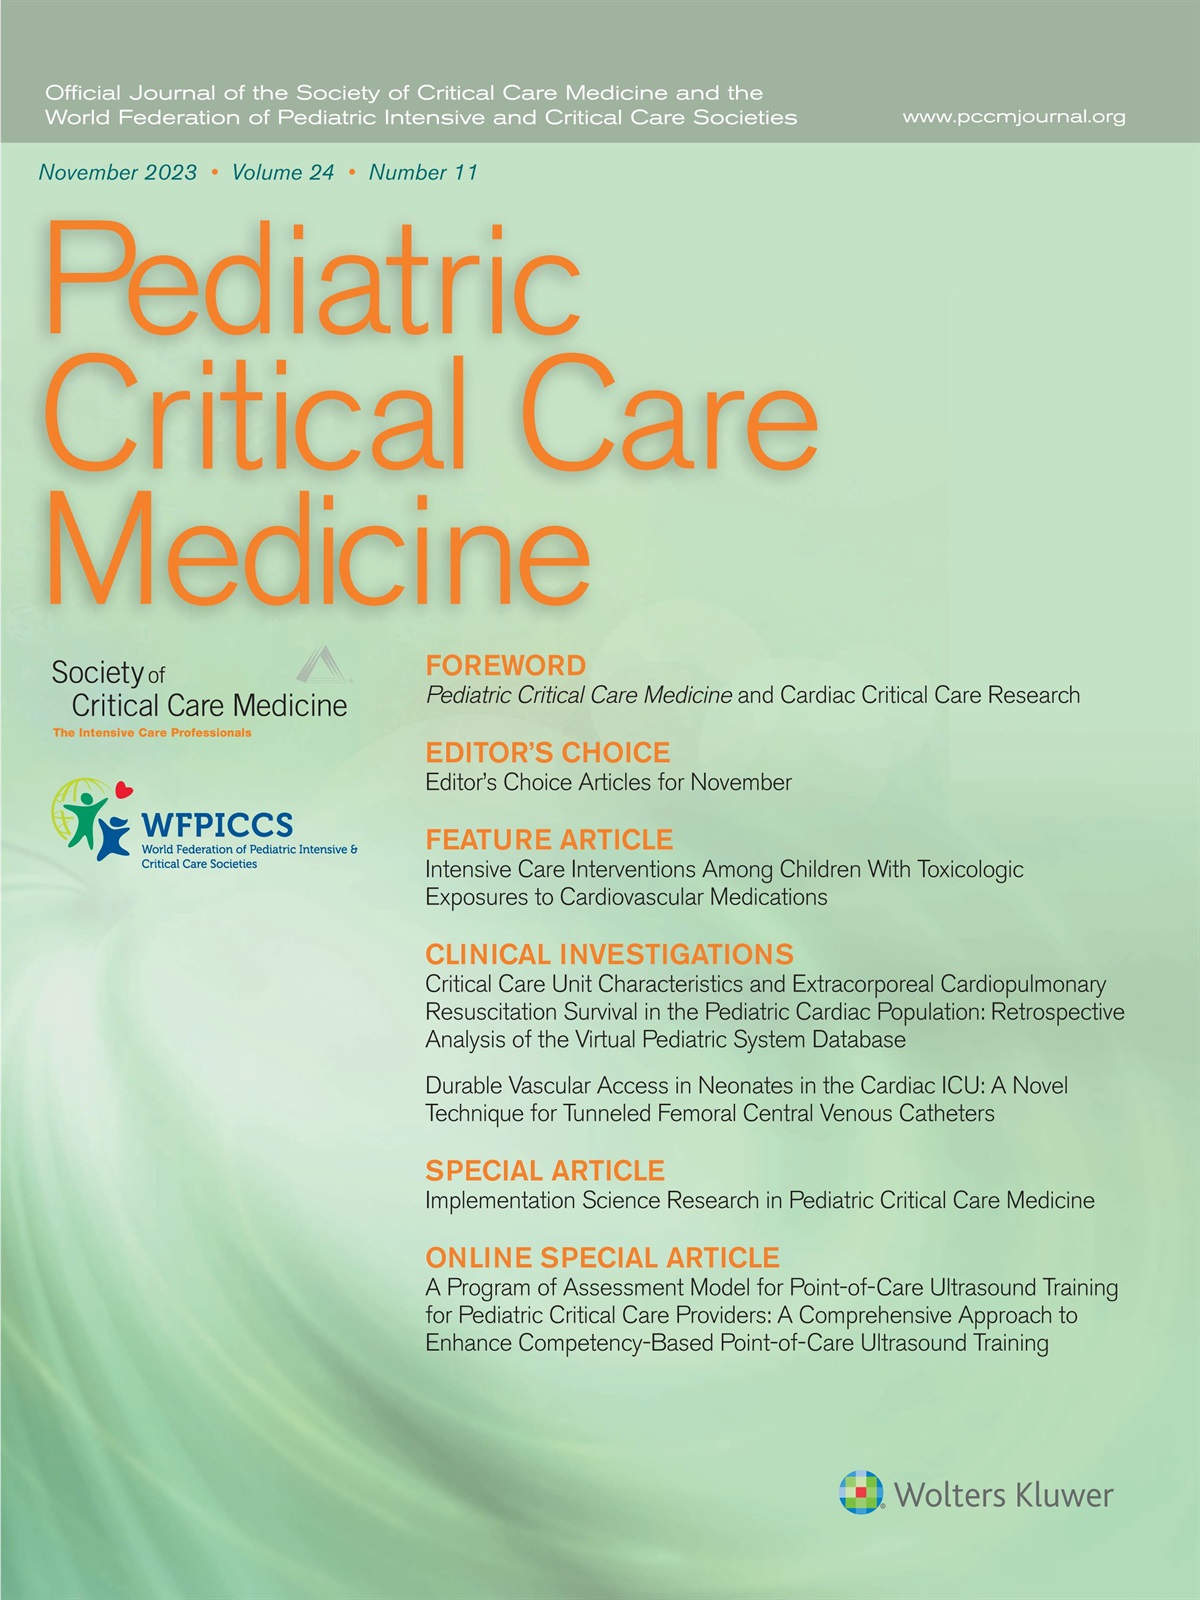 Pediatric Critical Care Medicine and Cardiac Critical Care Research